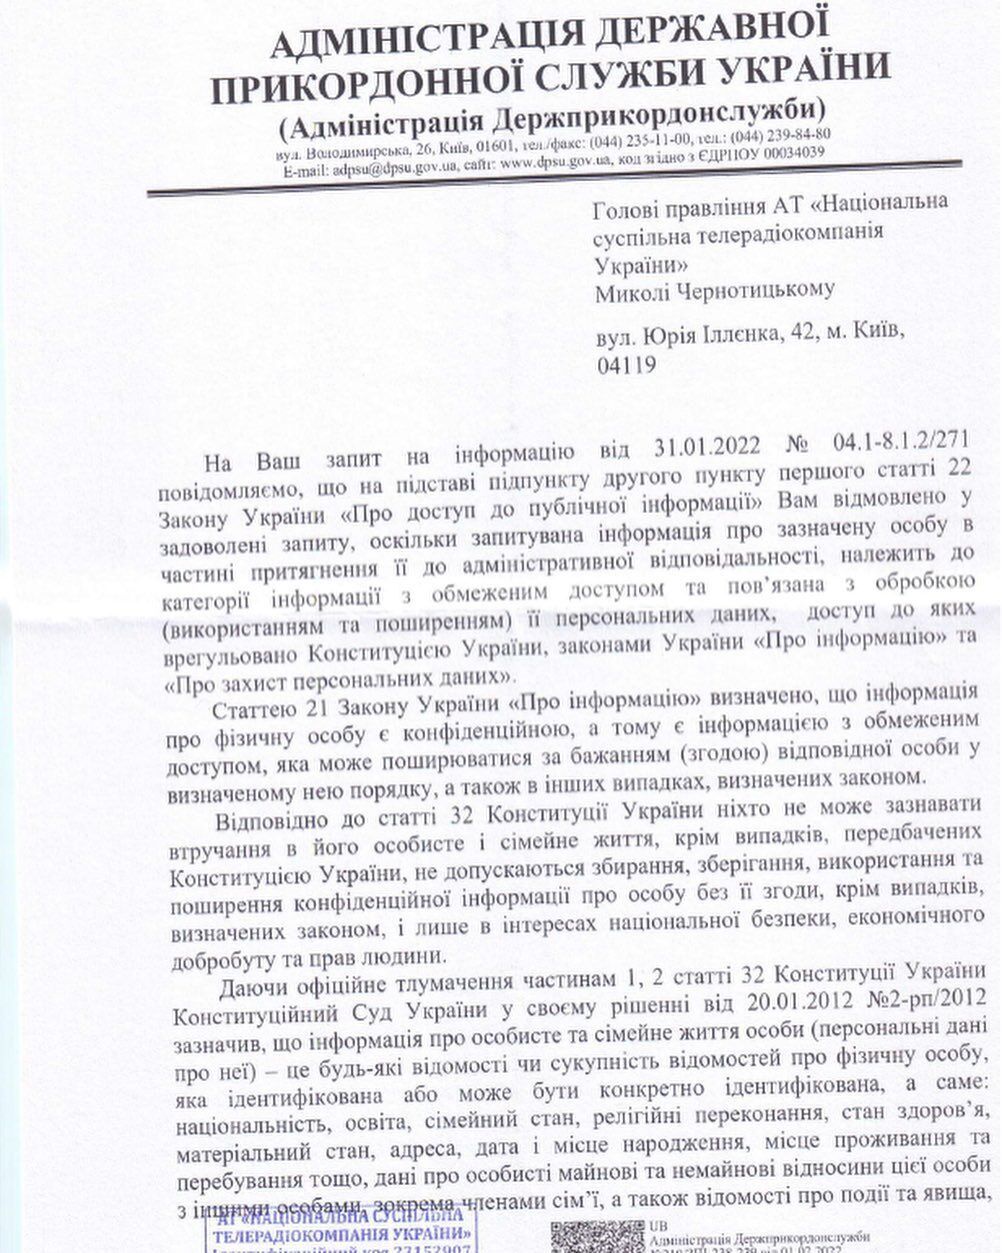 Державна прикордонна служба України відповіла, що інформація про перетин кордонів є конфіденційною